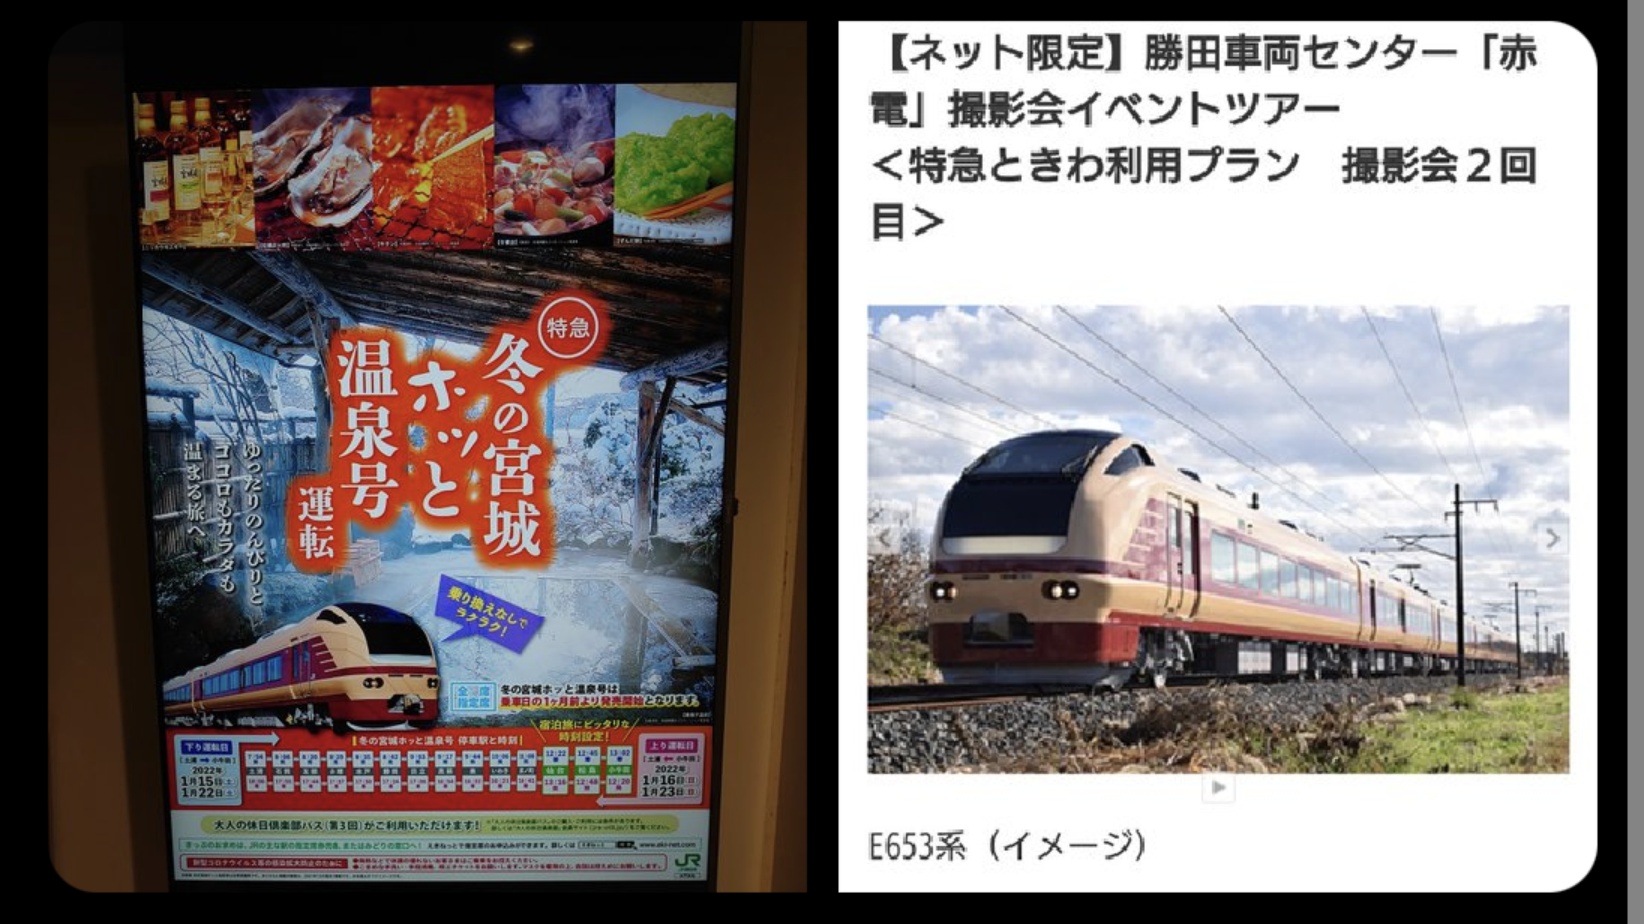 【1ヶ月前から知りながら直前で発表】E653系の撮影会がダブルブッキングでE501系に変更 JR東日本｢キャンセル料は払わない｣